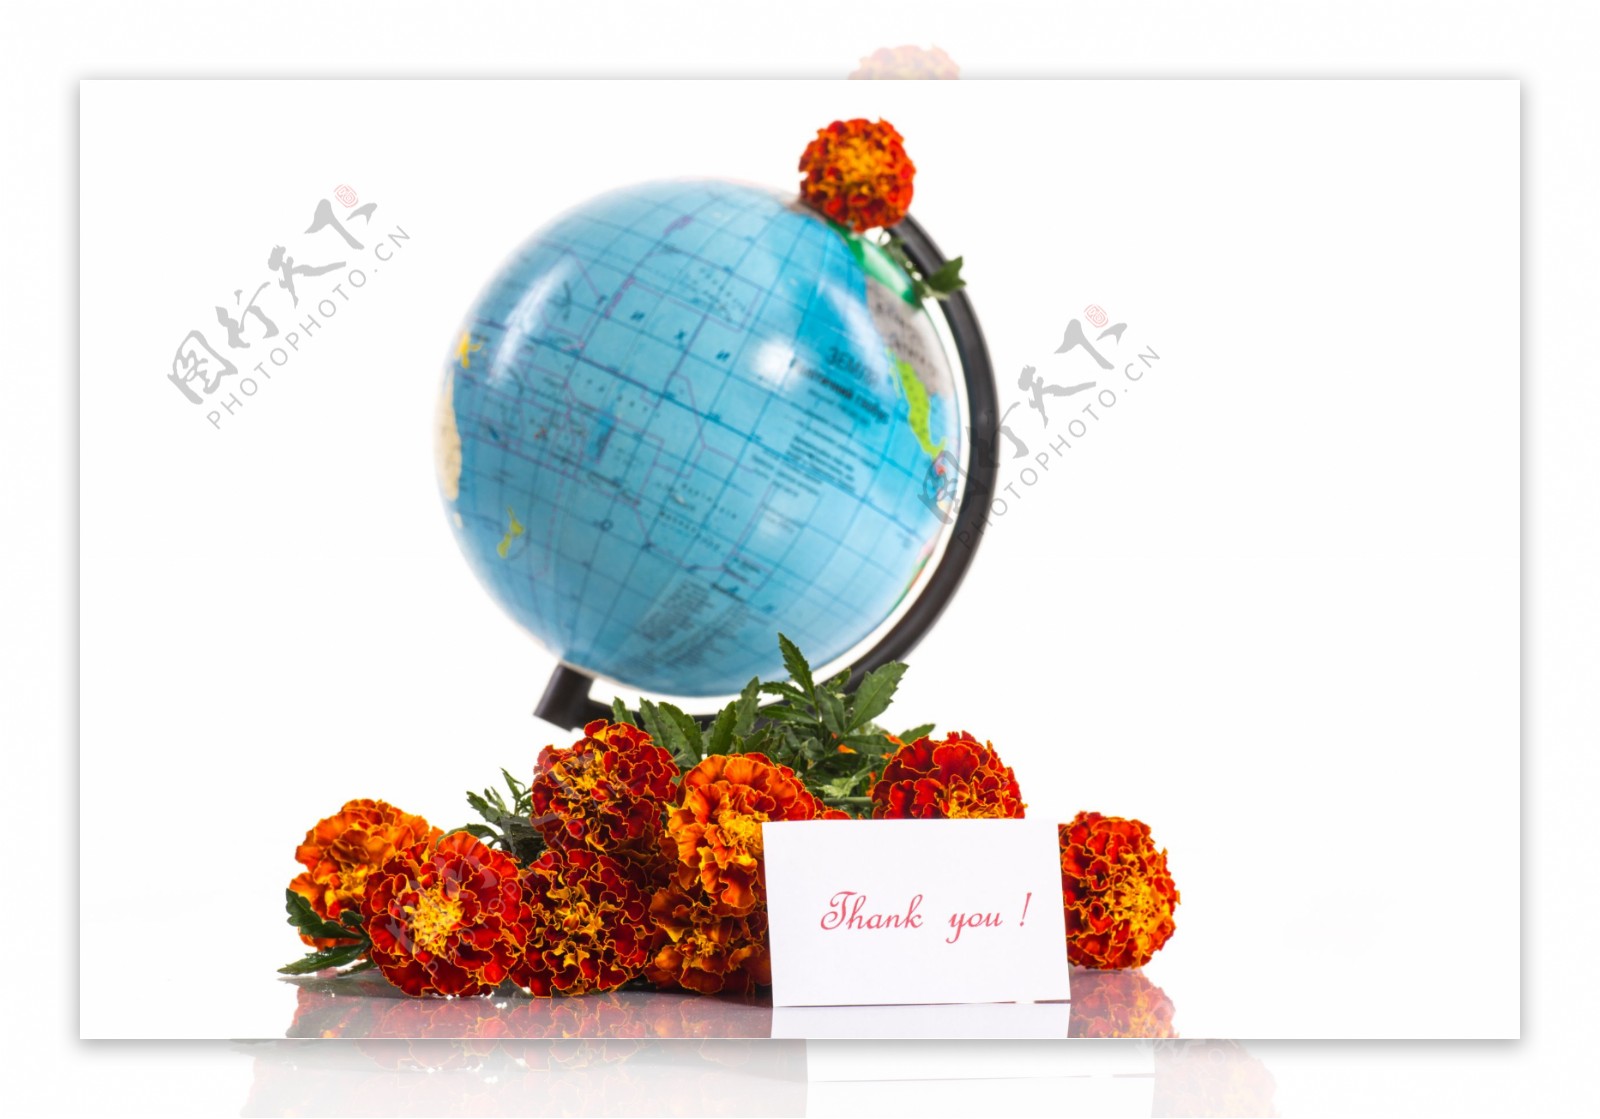 地球仪旁边的花朵图片